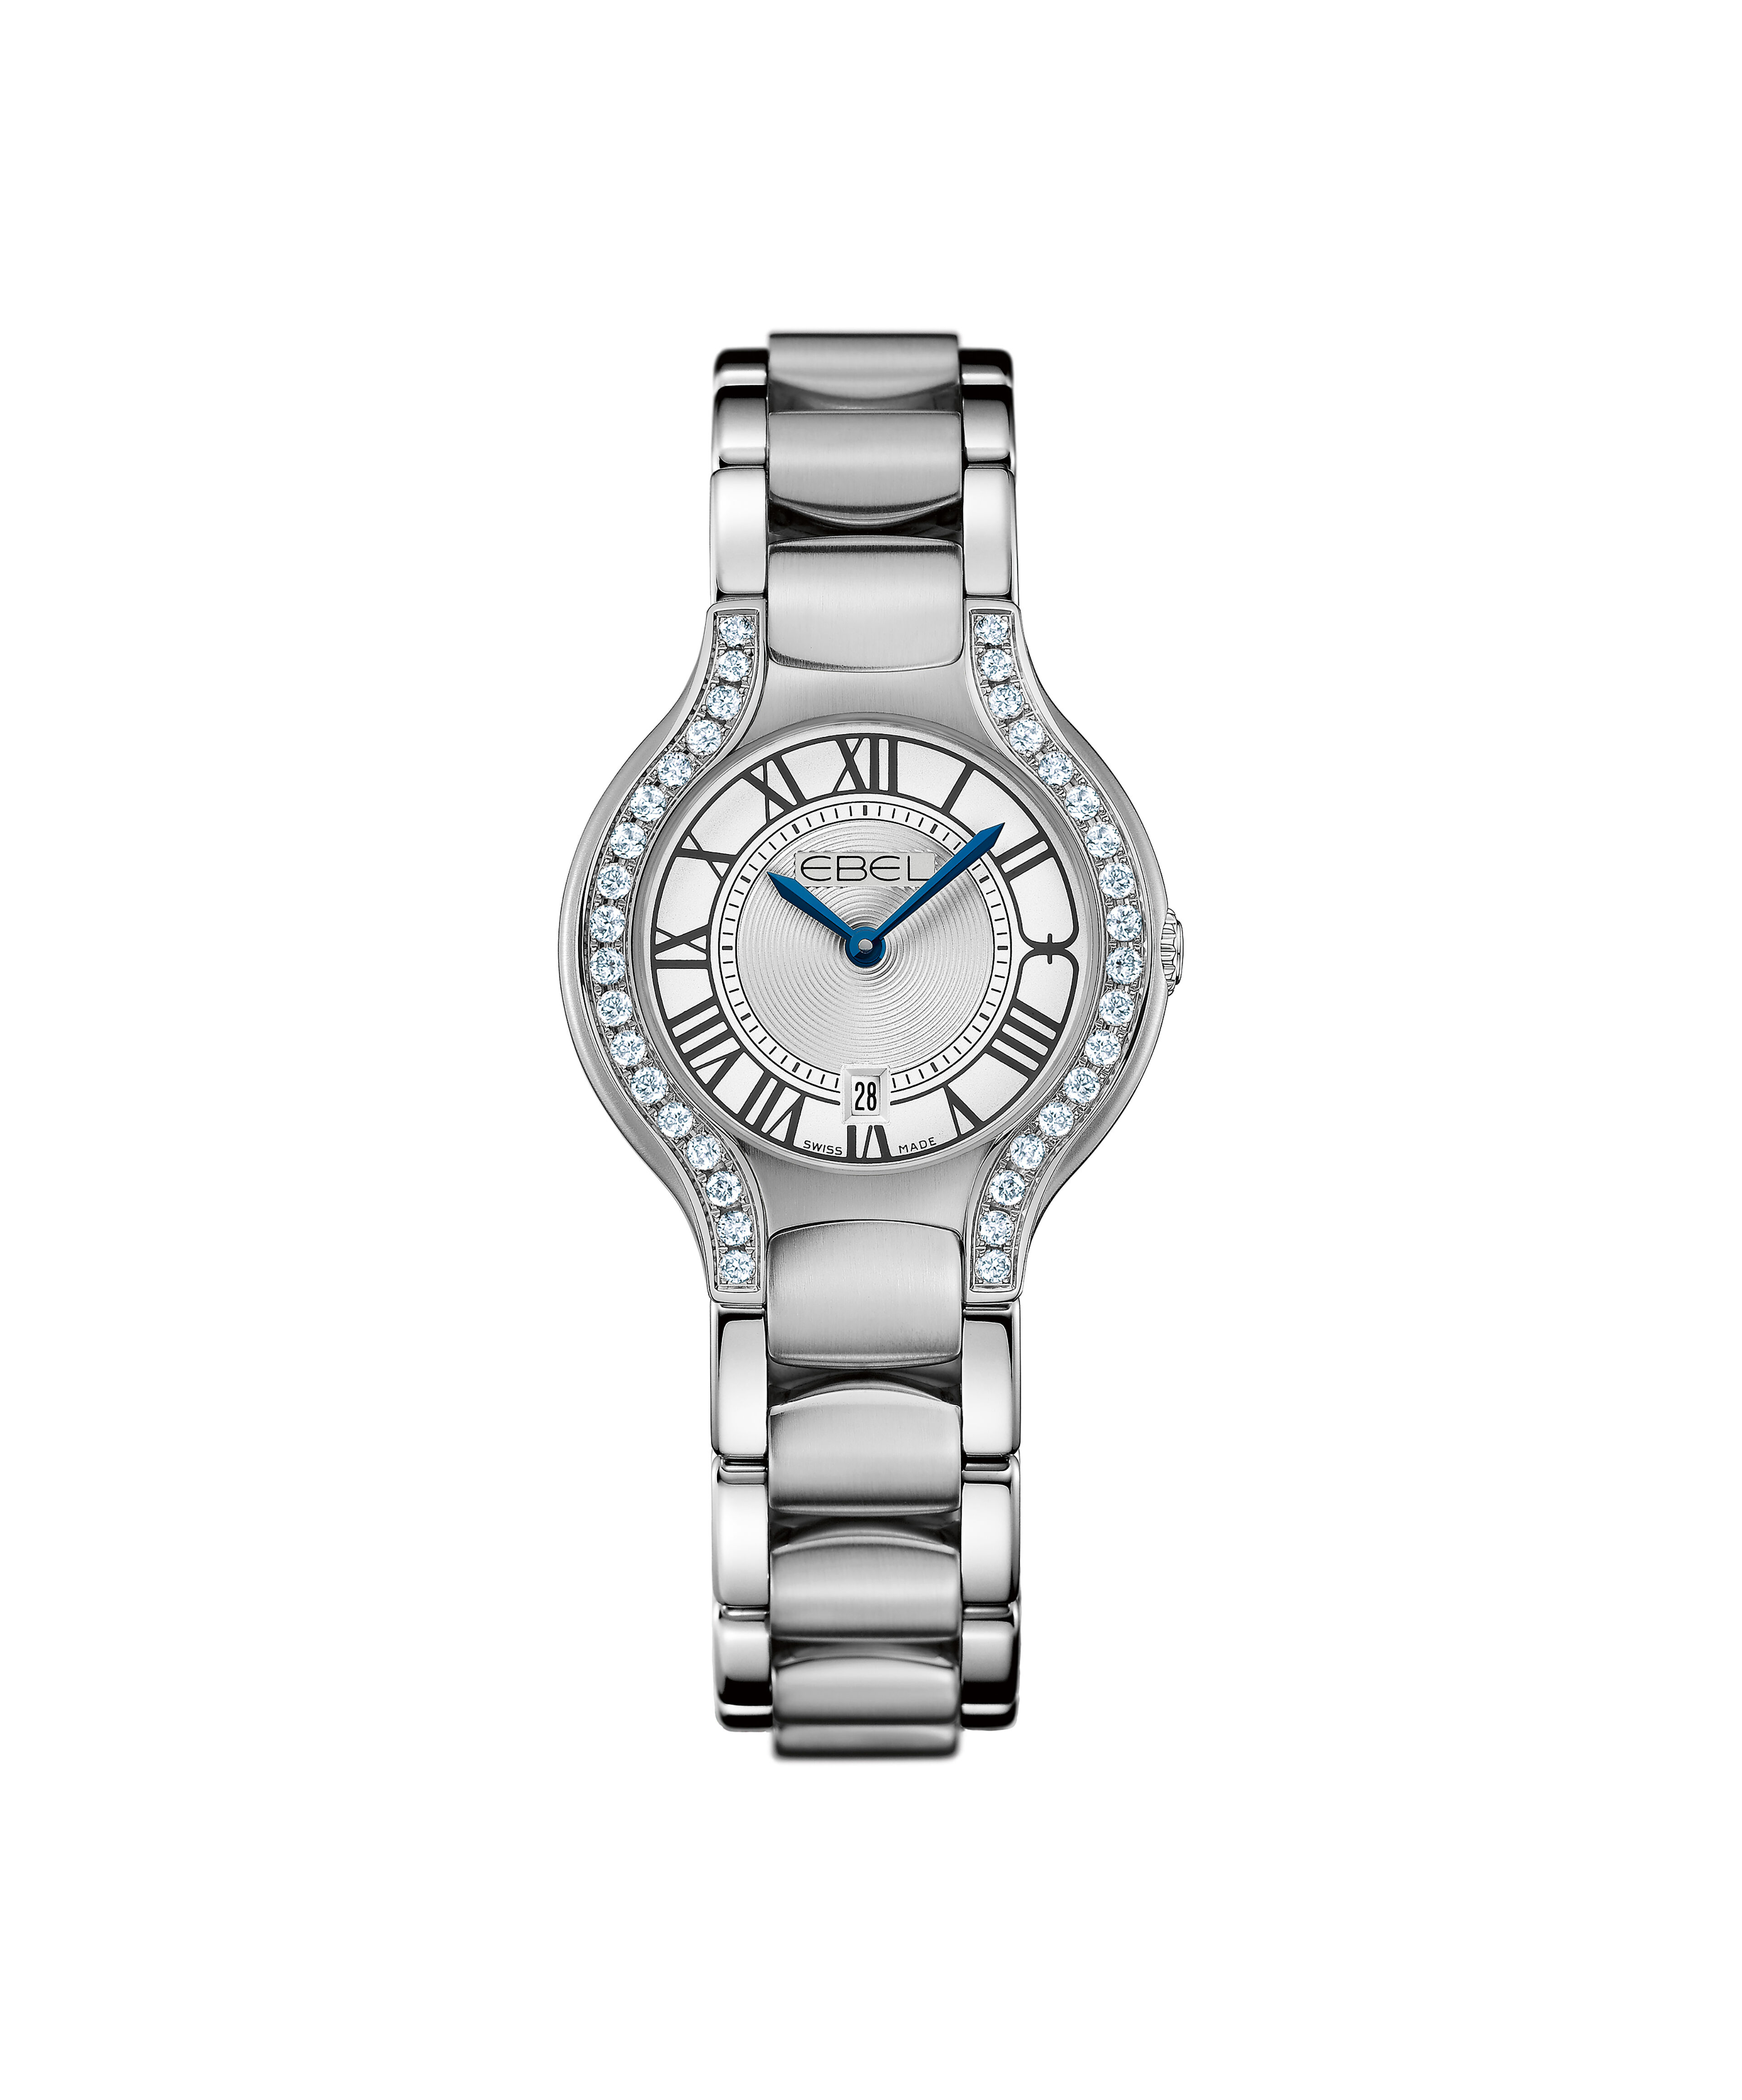 Rolex Replica Watch Price